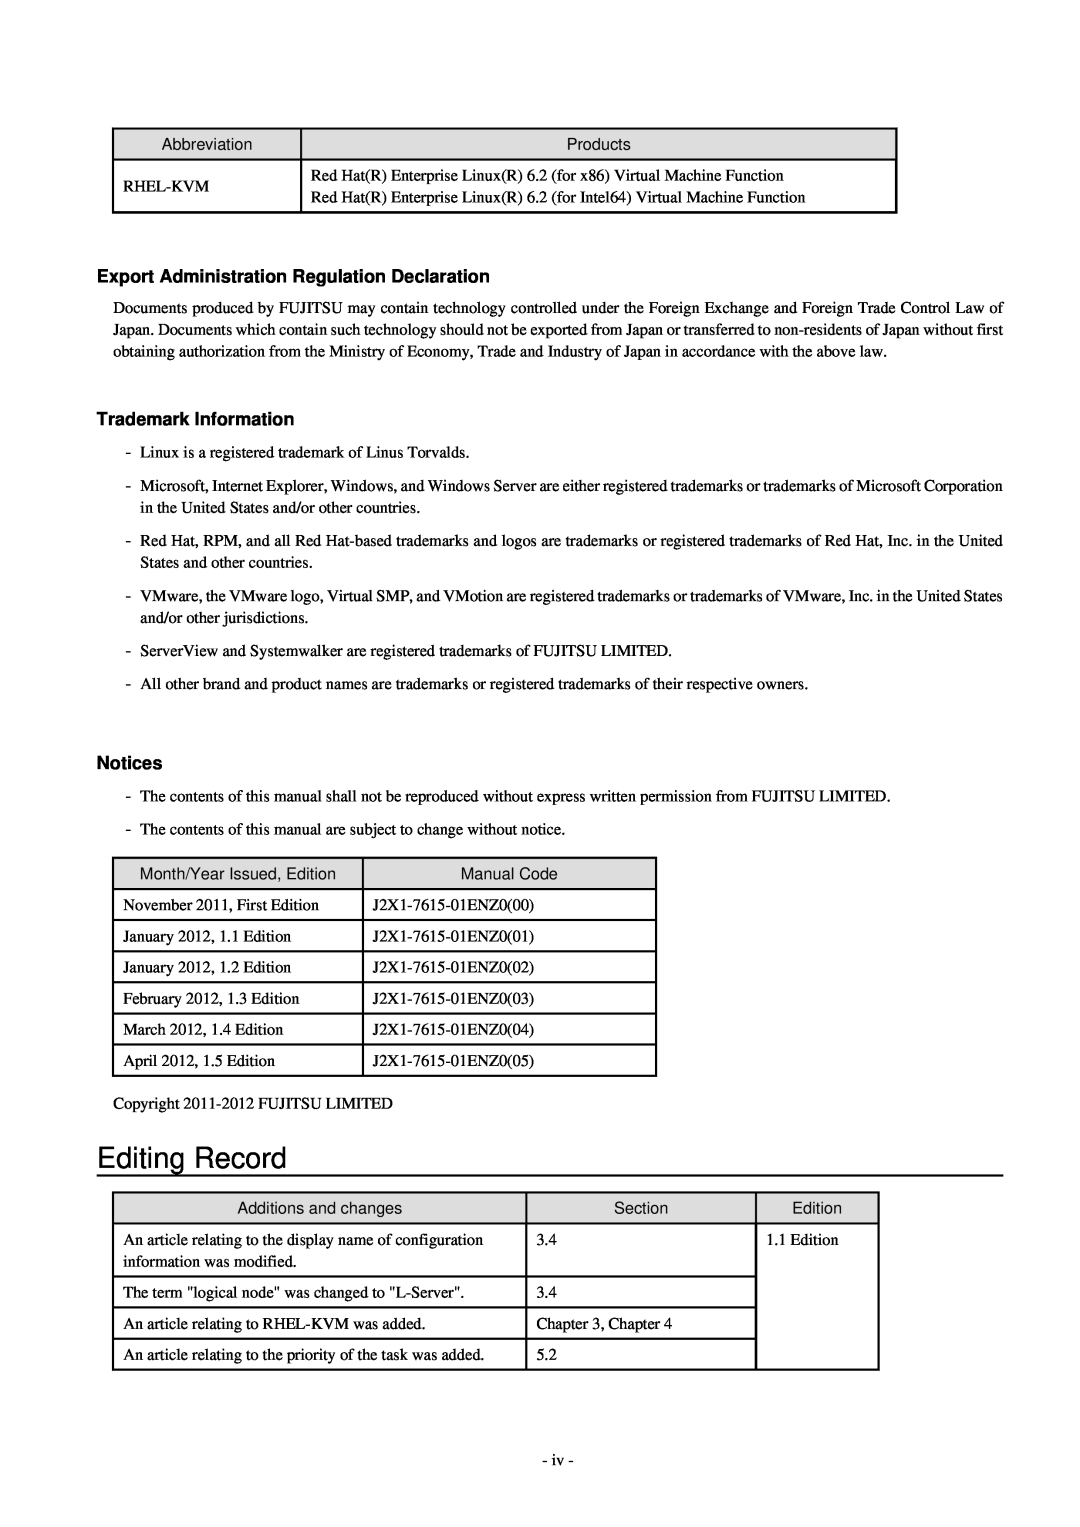 Fujitsu V3.0.0 manual Editing Record, Export Administration Regulation Declaration, Trademark Information, Notices 